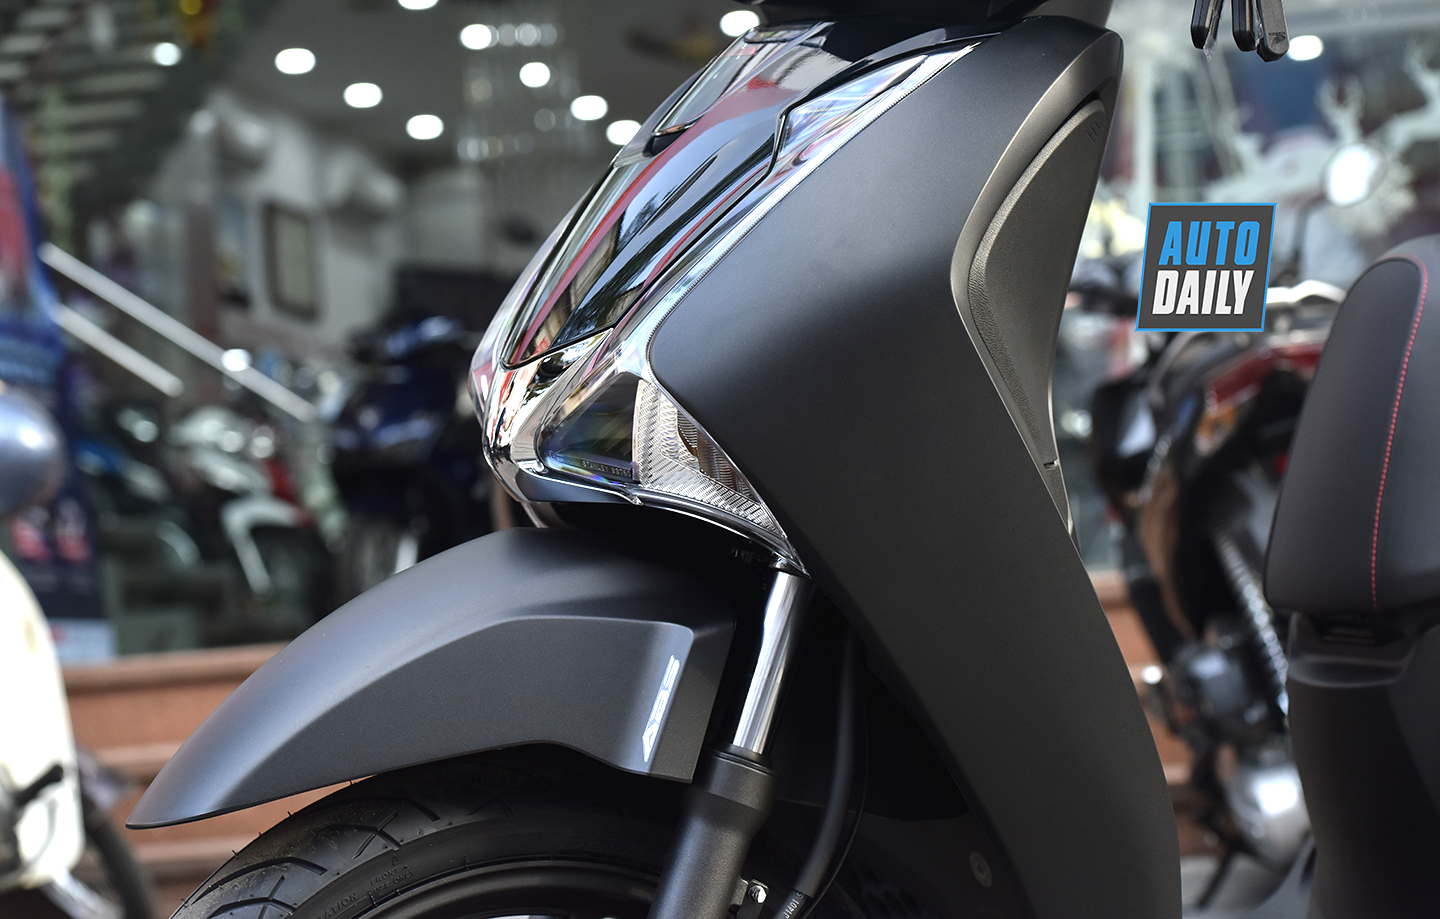 Honda SH 2019 màu đen mờ: Honda SH 2019 màu đen mờ trông thật sang trọng và đẳng cấp. Với thiết kế đậm chất hơi thở thể thao, SH 2019 là sự lựa chọn phù hợp cho những ai đang tìm kiếm chiếc xe đẹp và cực kỳ tiện dụng. Hãy chiêm ngưỡng hình ảnh liên quan để hiểu thêm về phiên bản này.